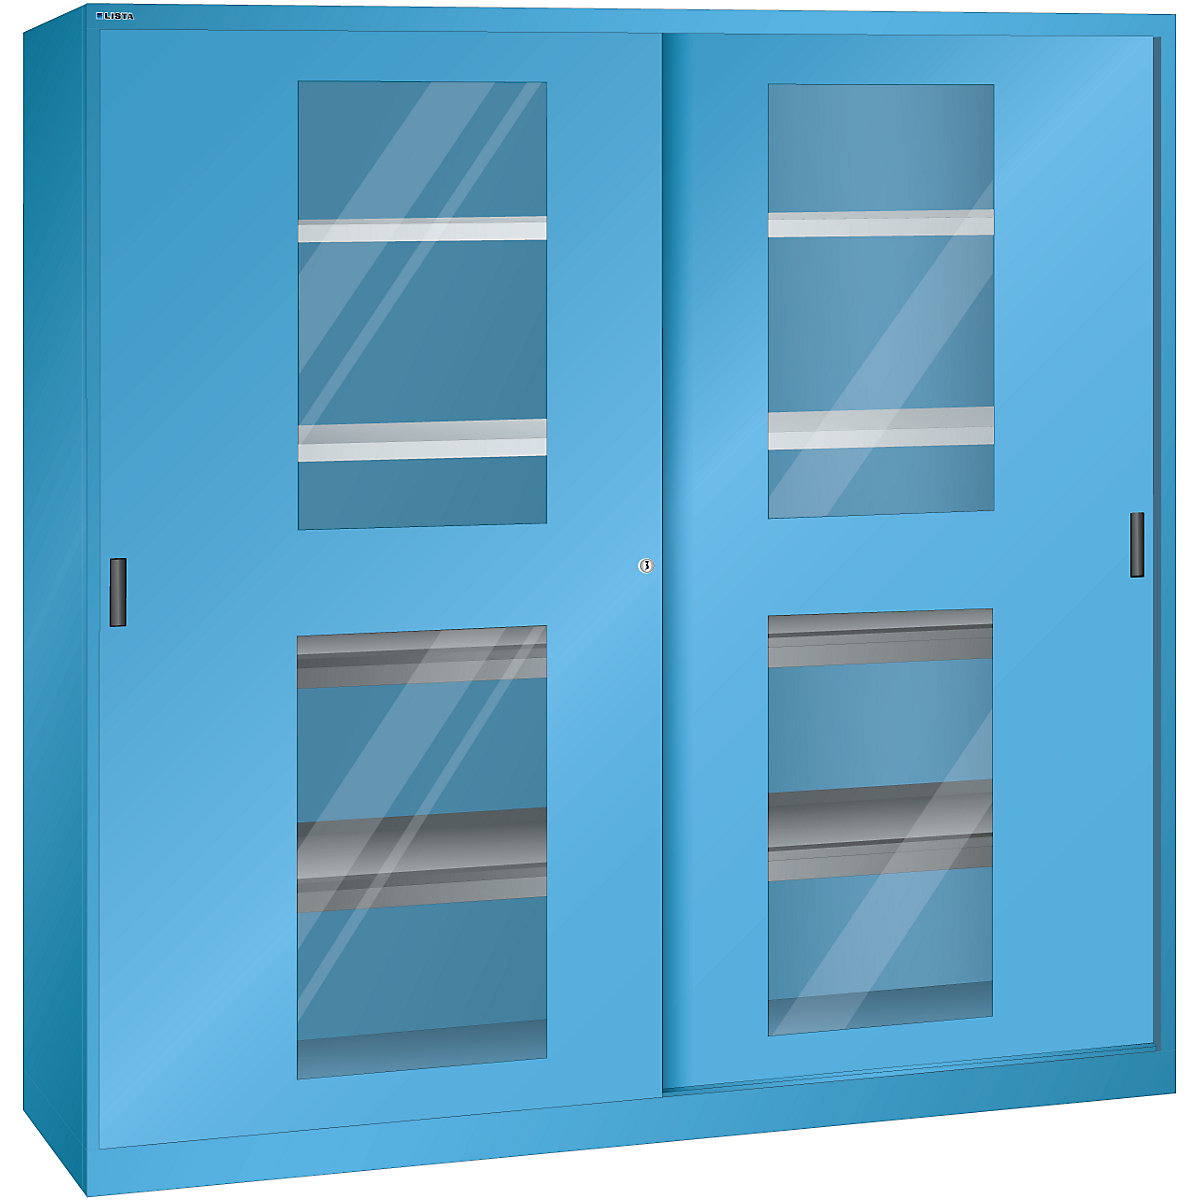 Dulap cu uşi glisante cu geamuri transparente - LISTA